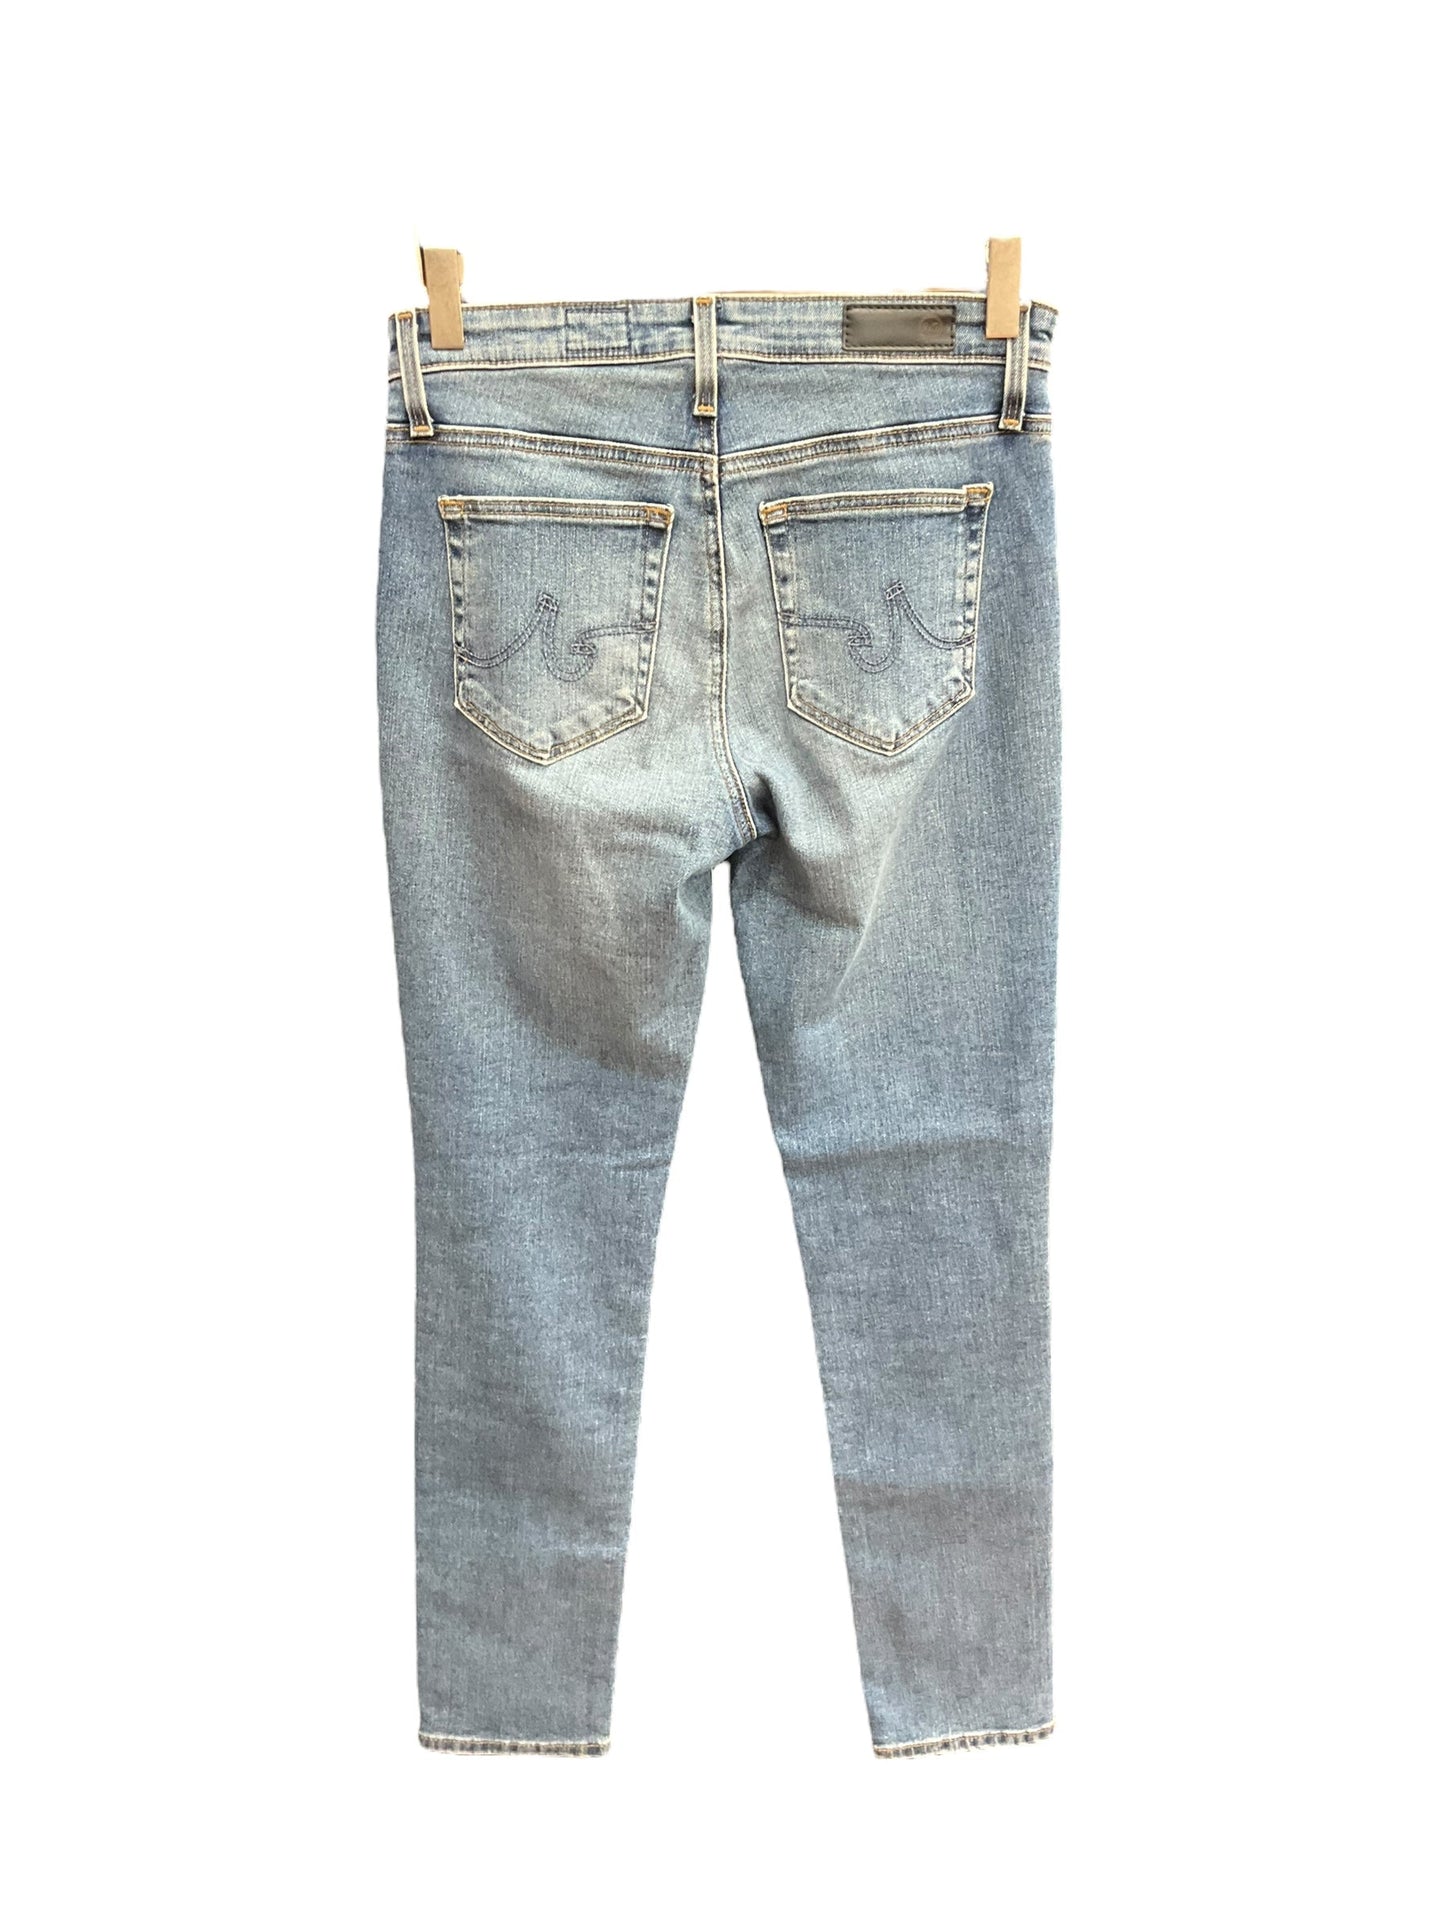 Blue Denim Jeans Skinny Adriano Goldschmied, Size 0